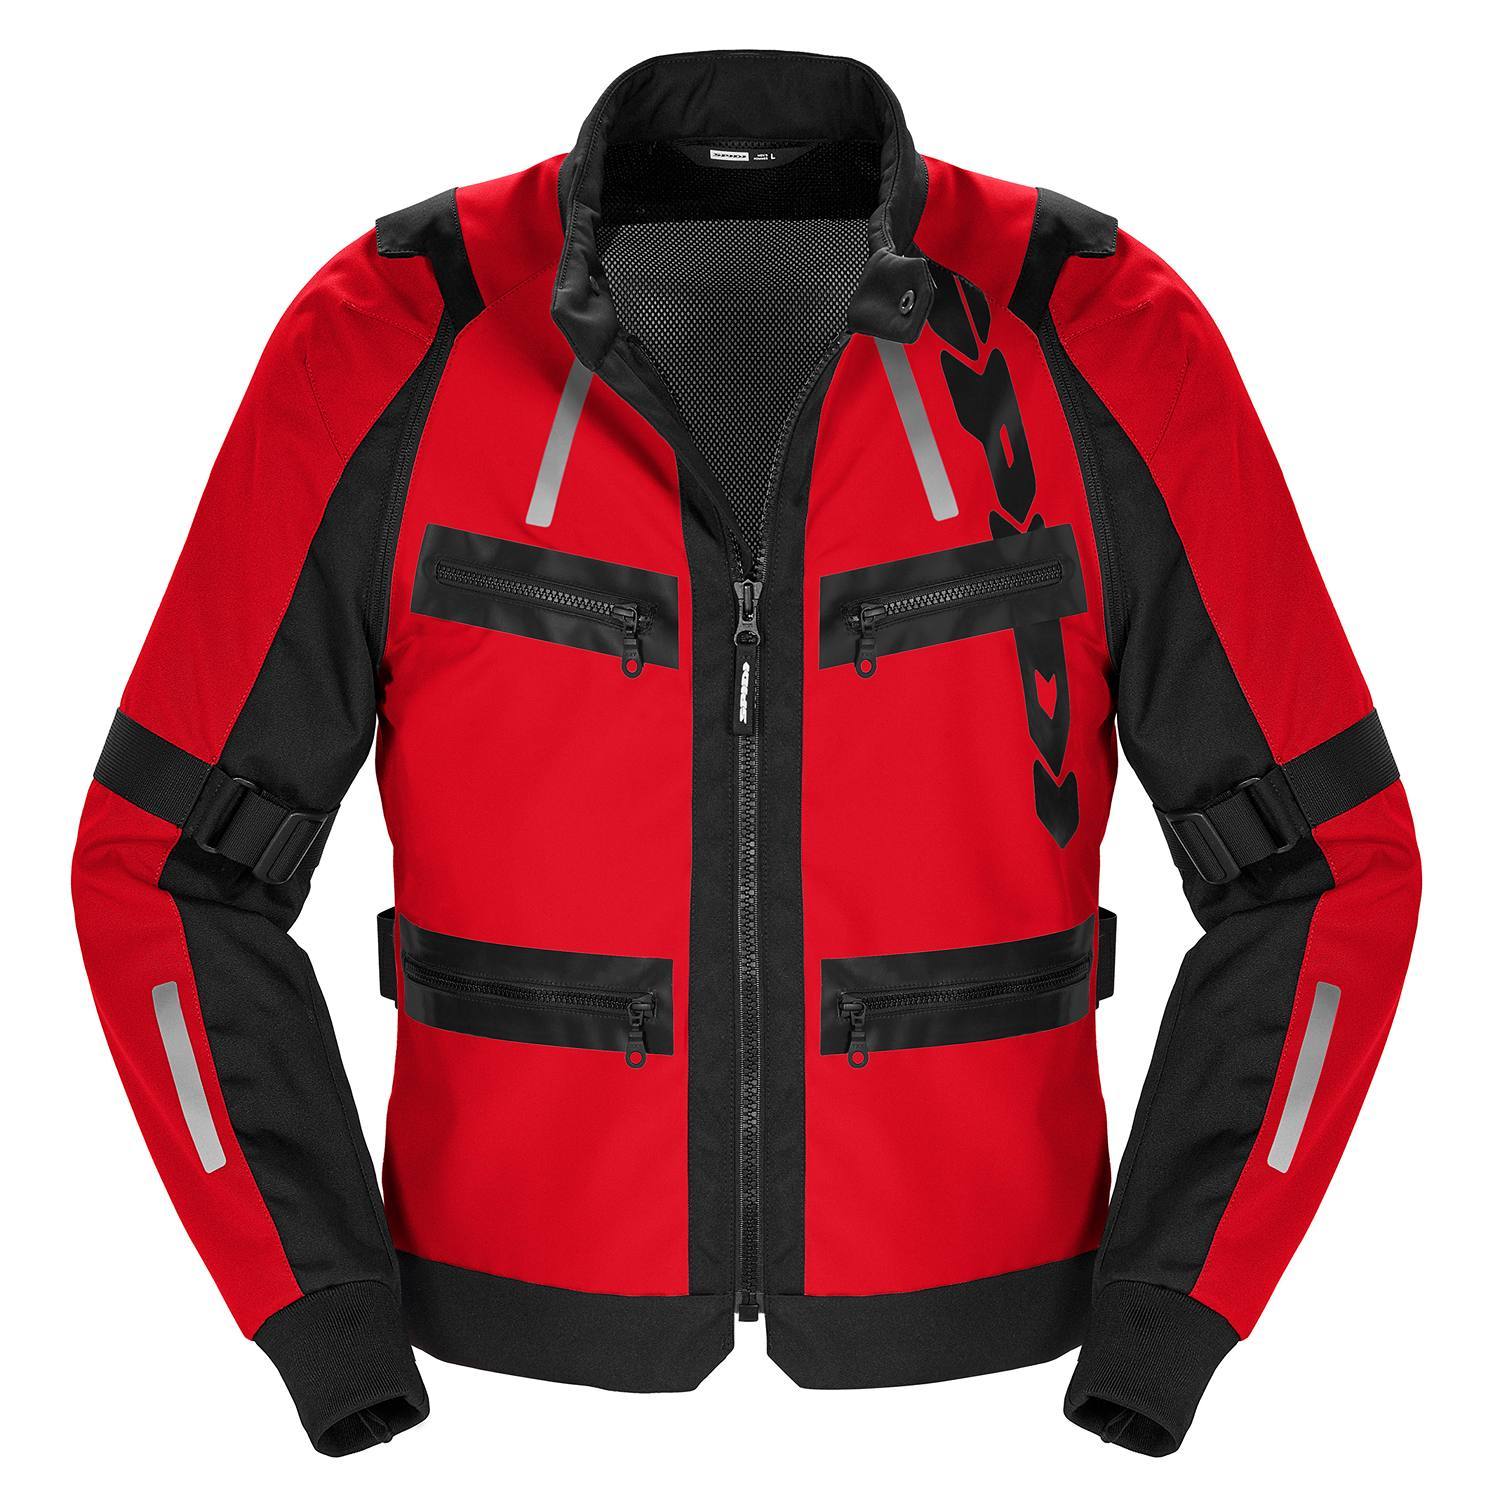 Image of Spidi Enduro Pro Jacket Red Size 2XL ID 8030161484977